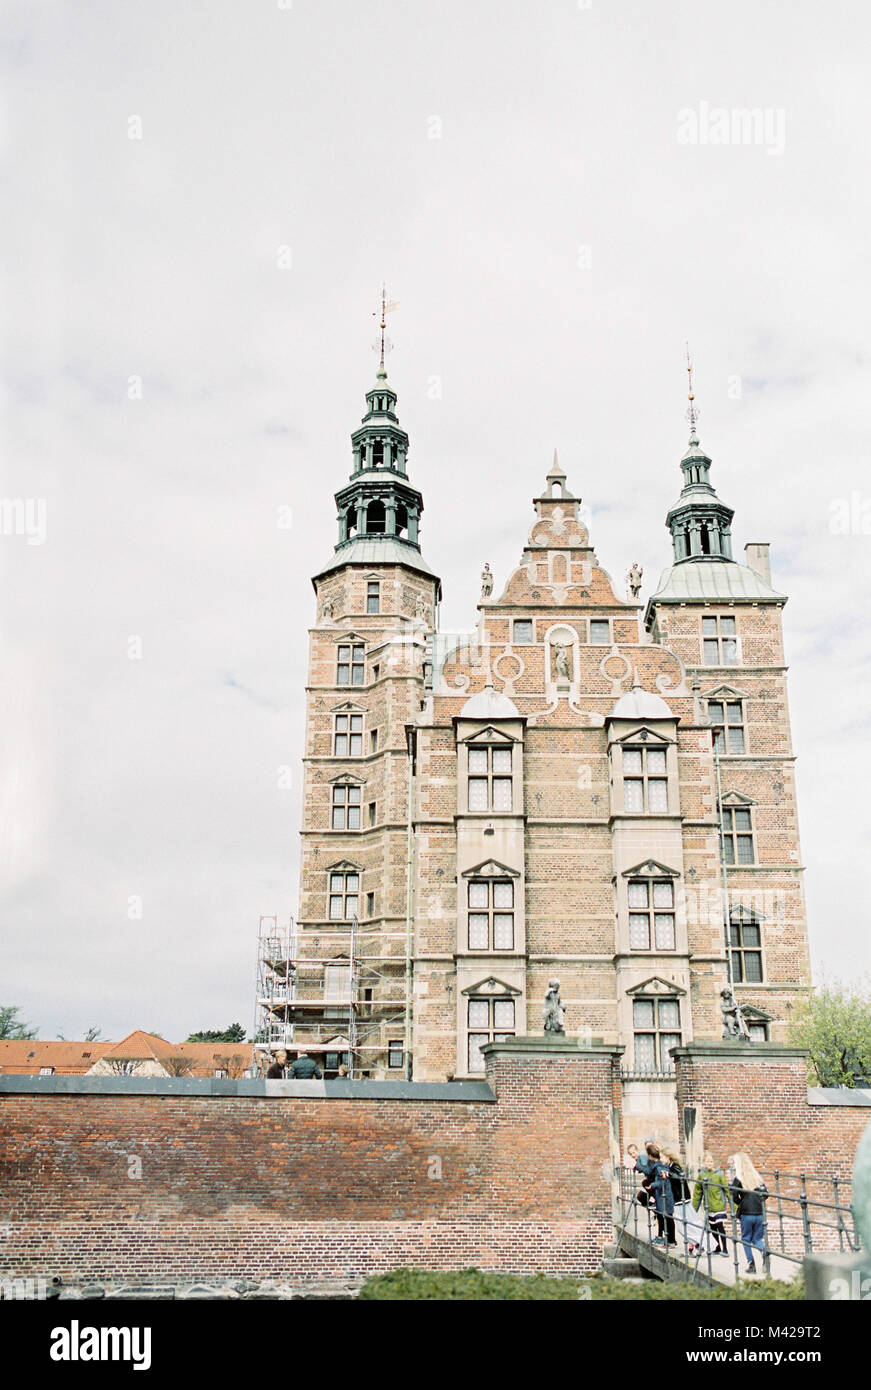 Una delle tante belle attrazioni di Copenhagen. Questo statico, impressionante castello / slot e i suoi giardini circostanti. Foto Stock